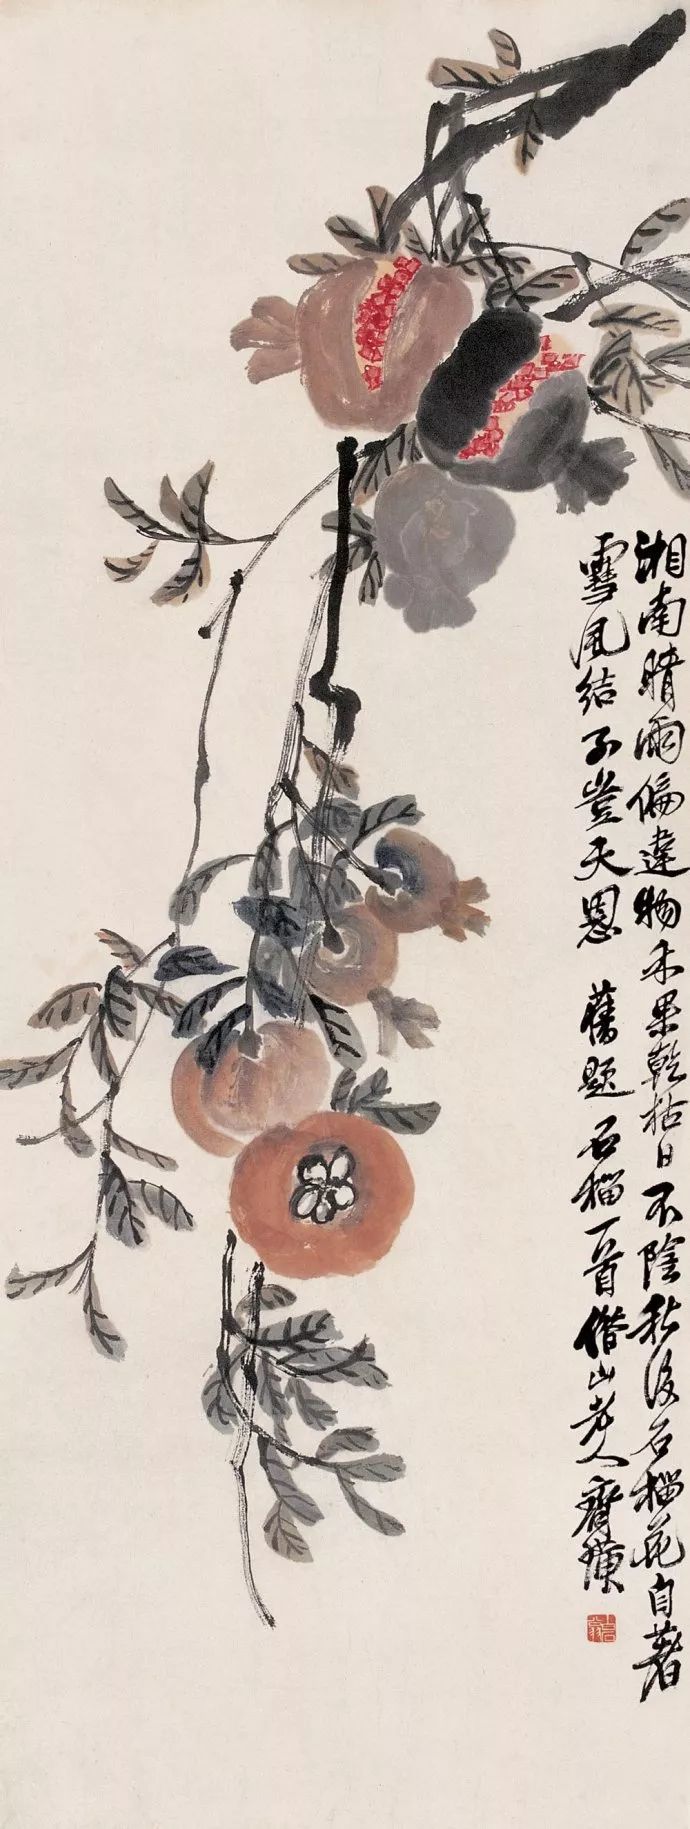 思挂 中国人视石榴为吉祥物 以为家族兴旺,多子多福的象征 齐白石晚年